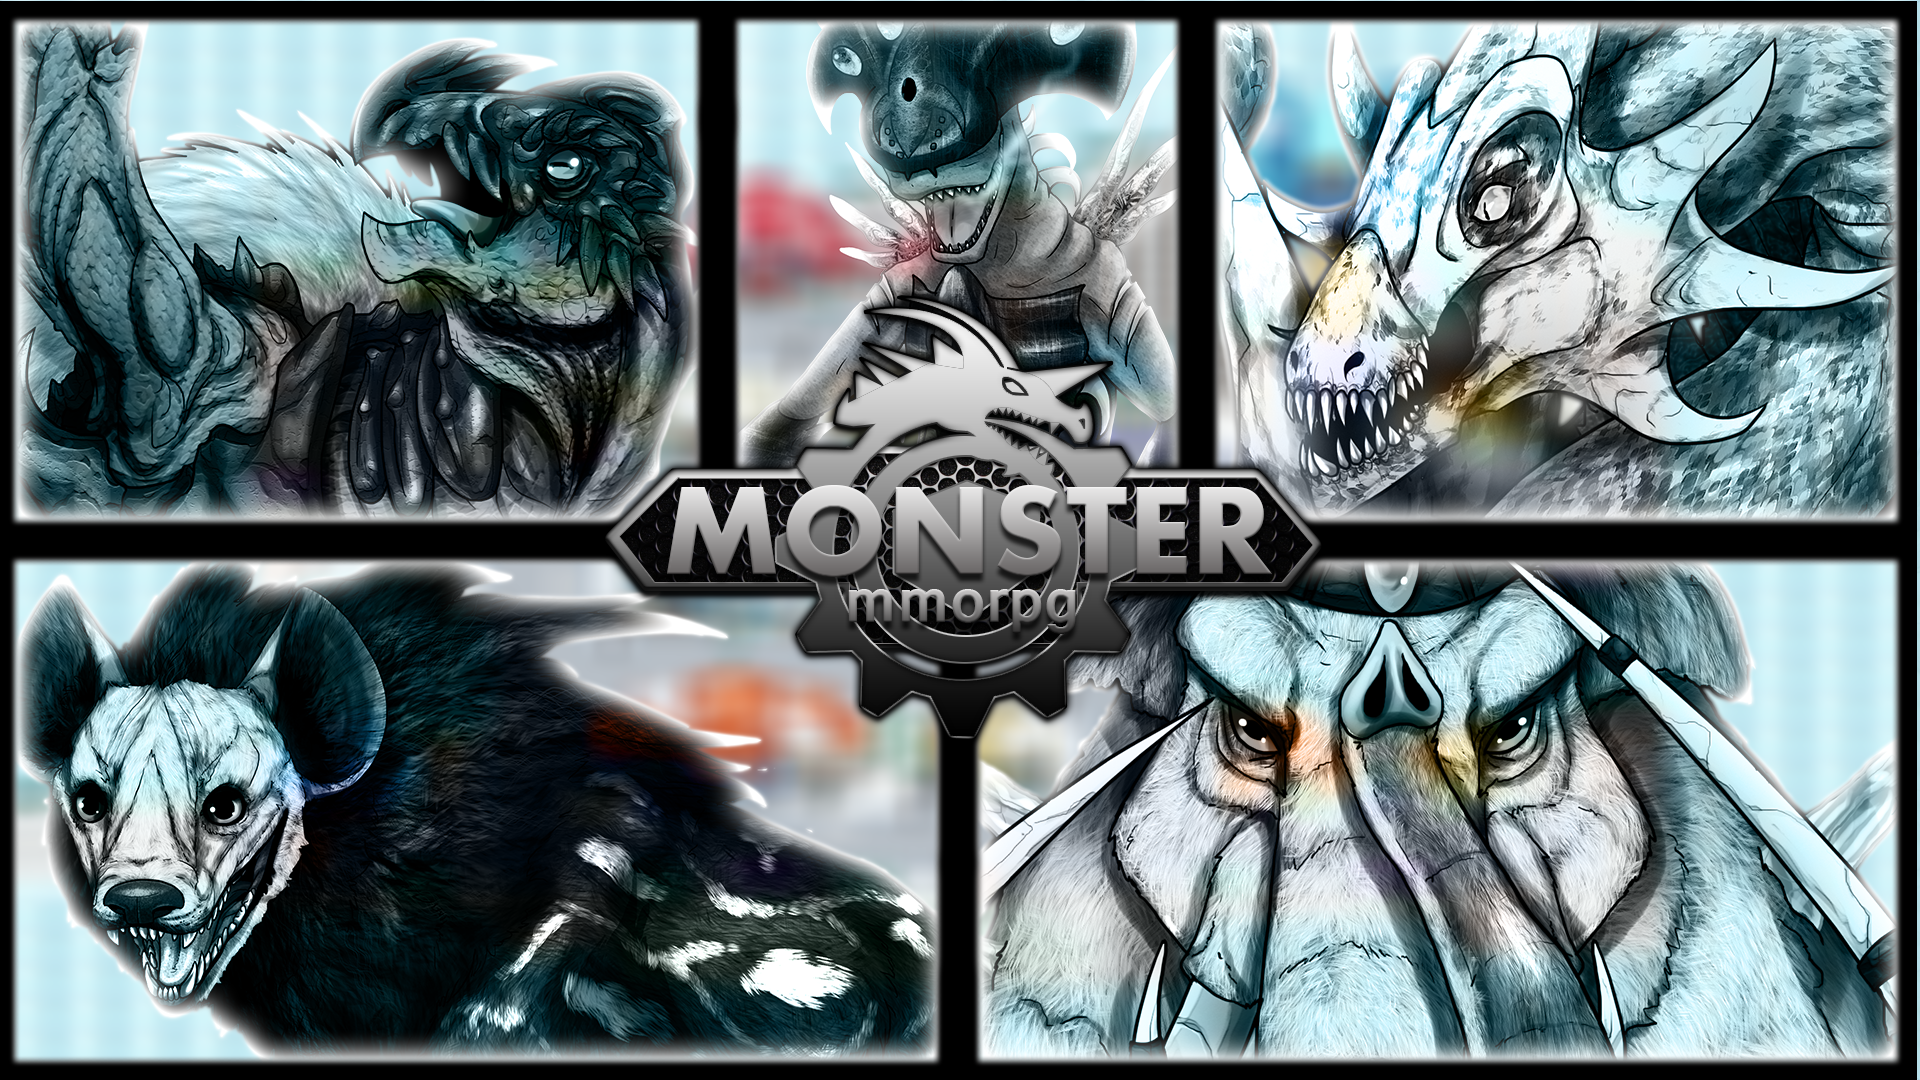 Rpg Indie Game Monstermmorpg Wallpaper - Online Mmorpg Browser Games - HD Wallpaper 